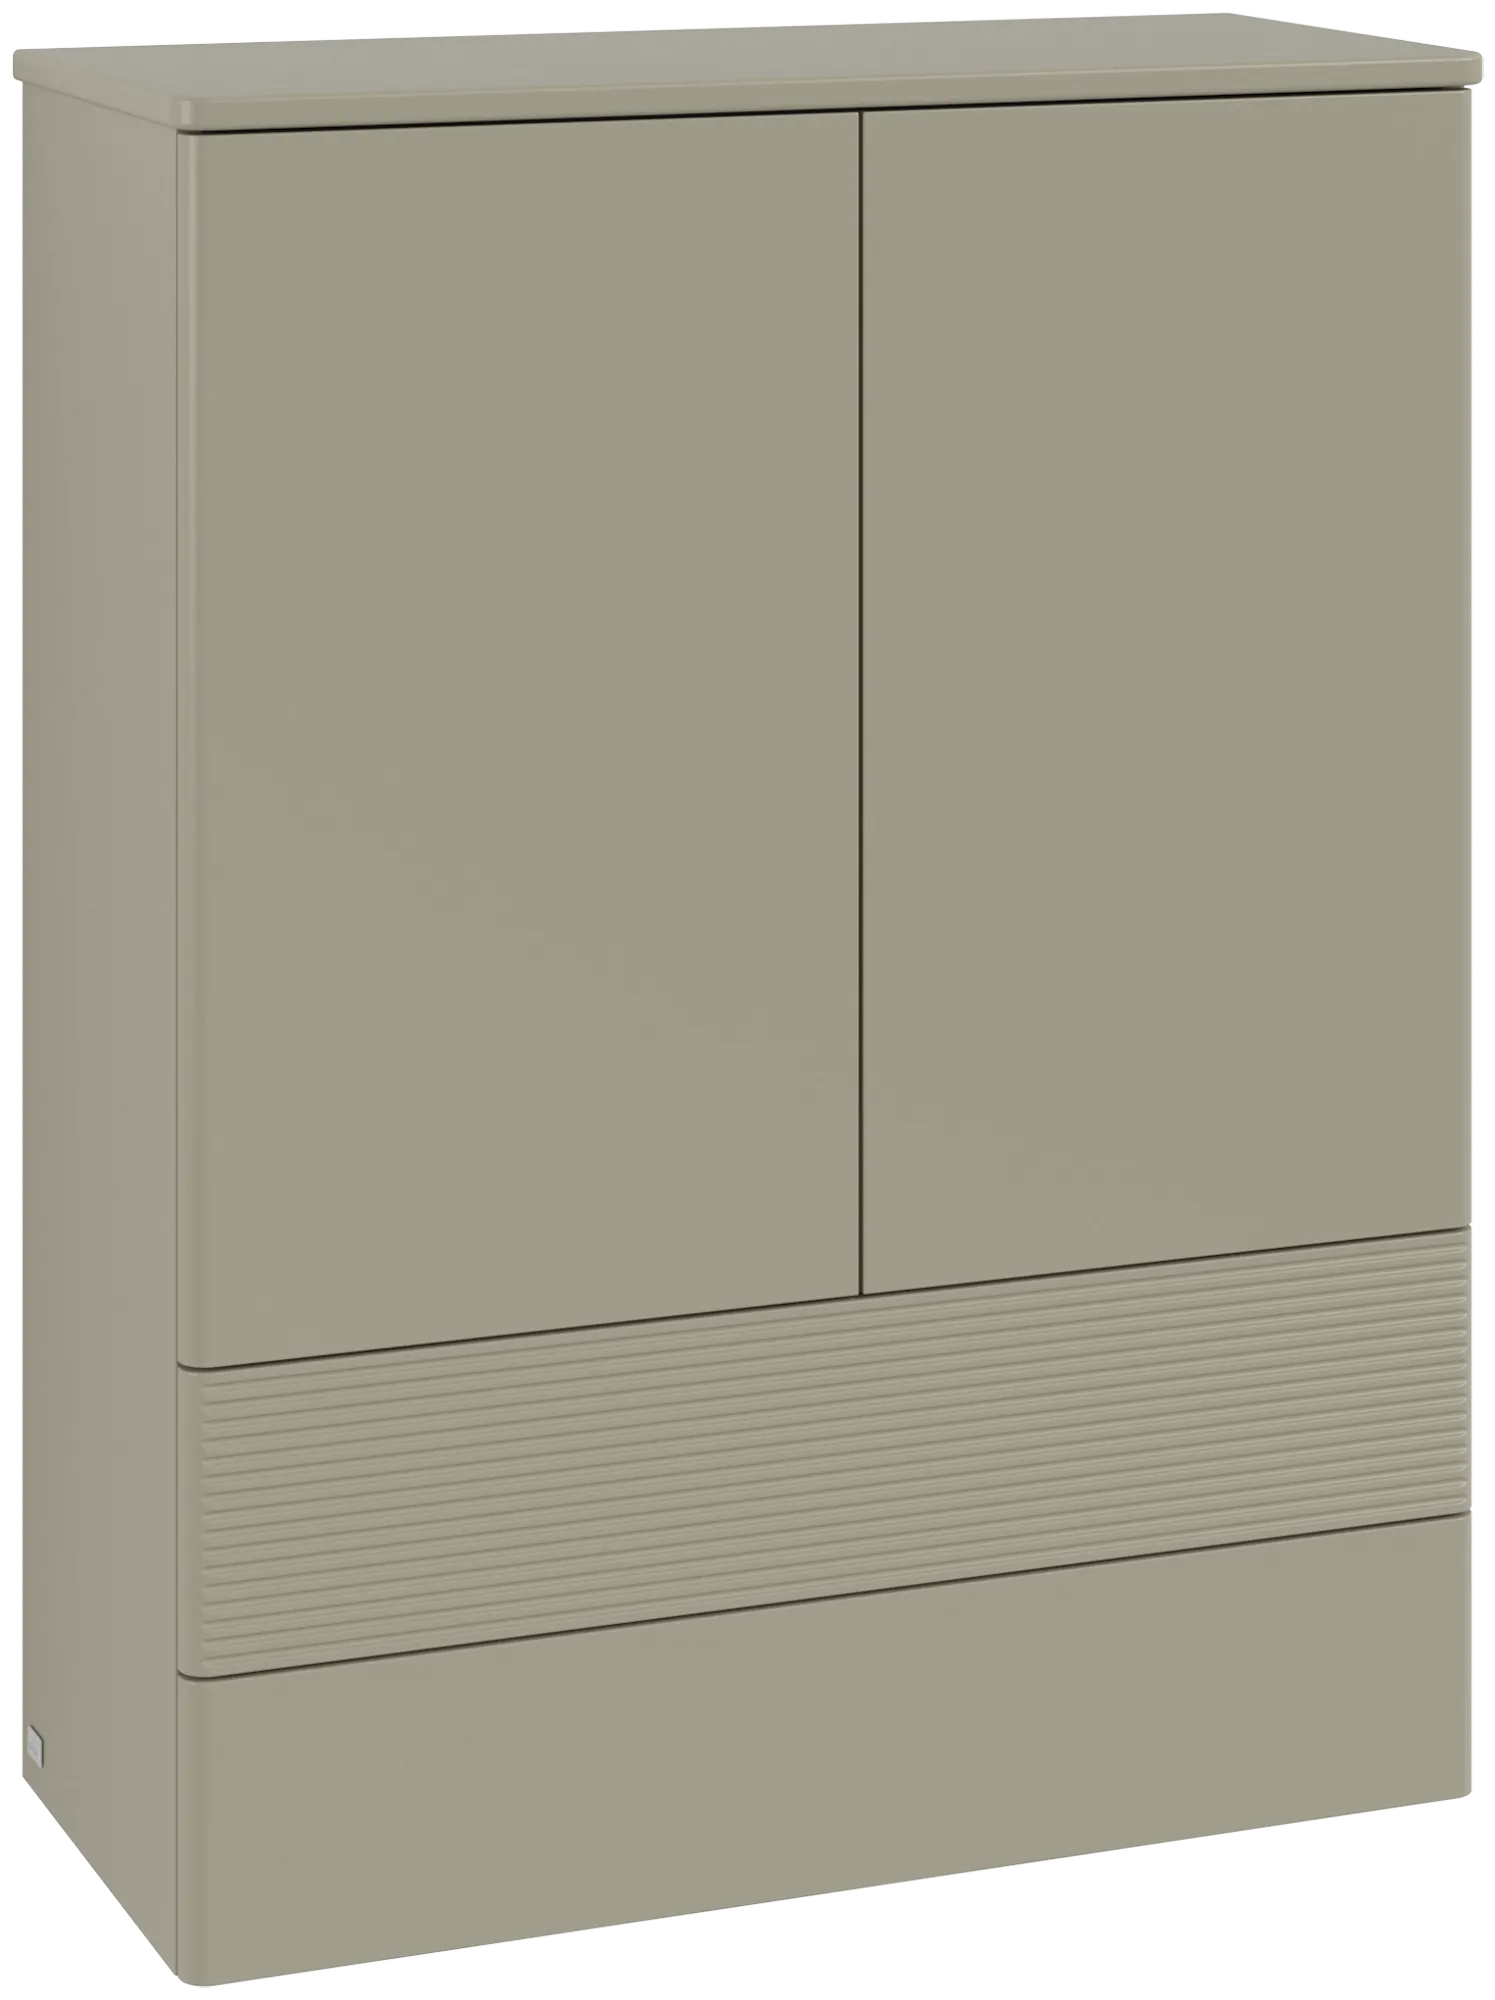 Bild von VILLEROY BOCH Antao Highboard, mit Beleuchtung, 2 Türen, 814 x 1039 x 356 mm, Front mit Struktur, Stone Grey Matt Lacquer / Stone Grey Matt Lacquer #L47100HK